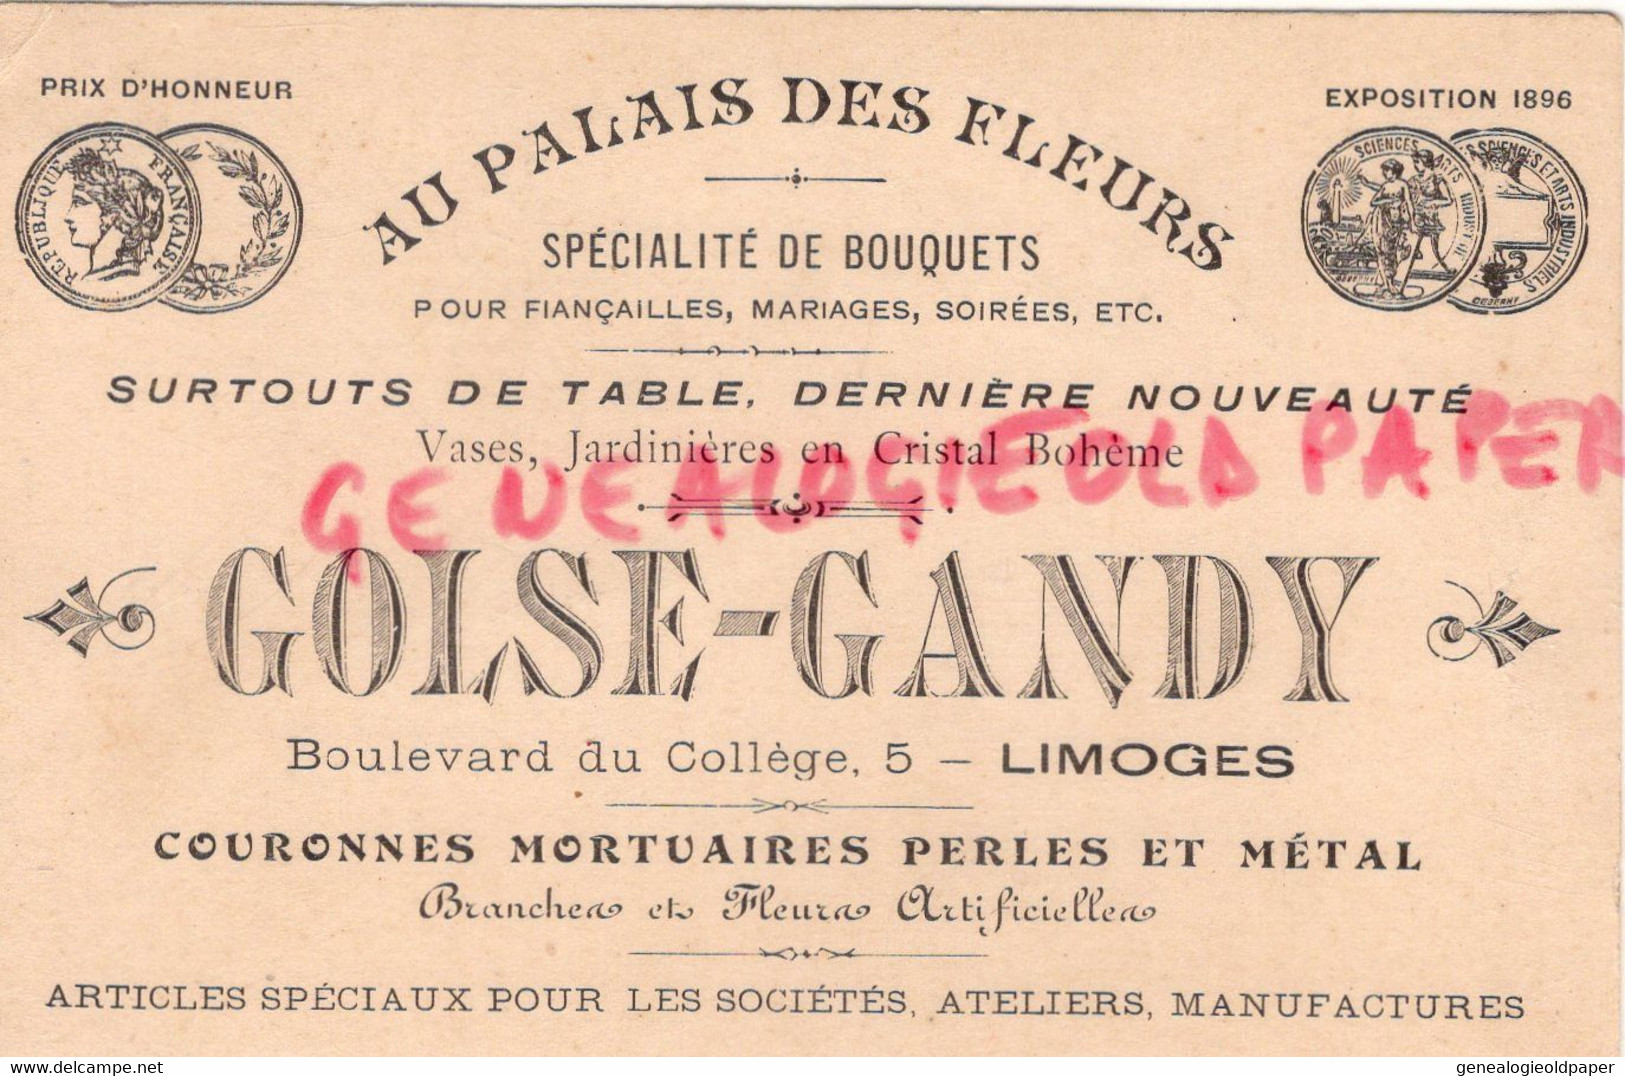 87- LIMOGES- RARE CARTE GOLSE GANDY- AU PALAIS DES FLEURS-FLEURISTE-5 BOULEVARD DU COLLEGE-EXPOSITION 1896 - Ambachten